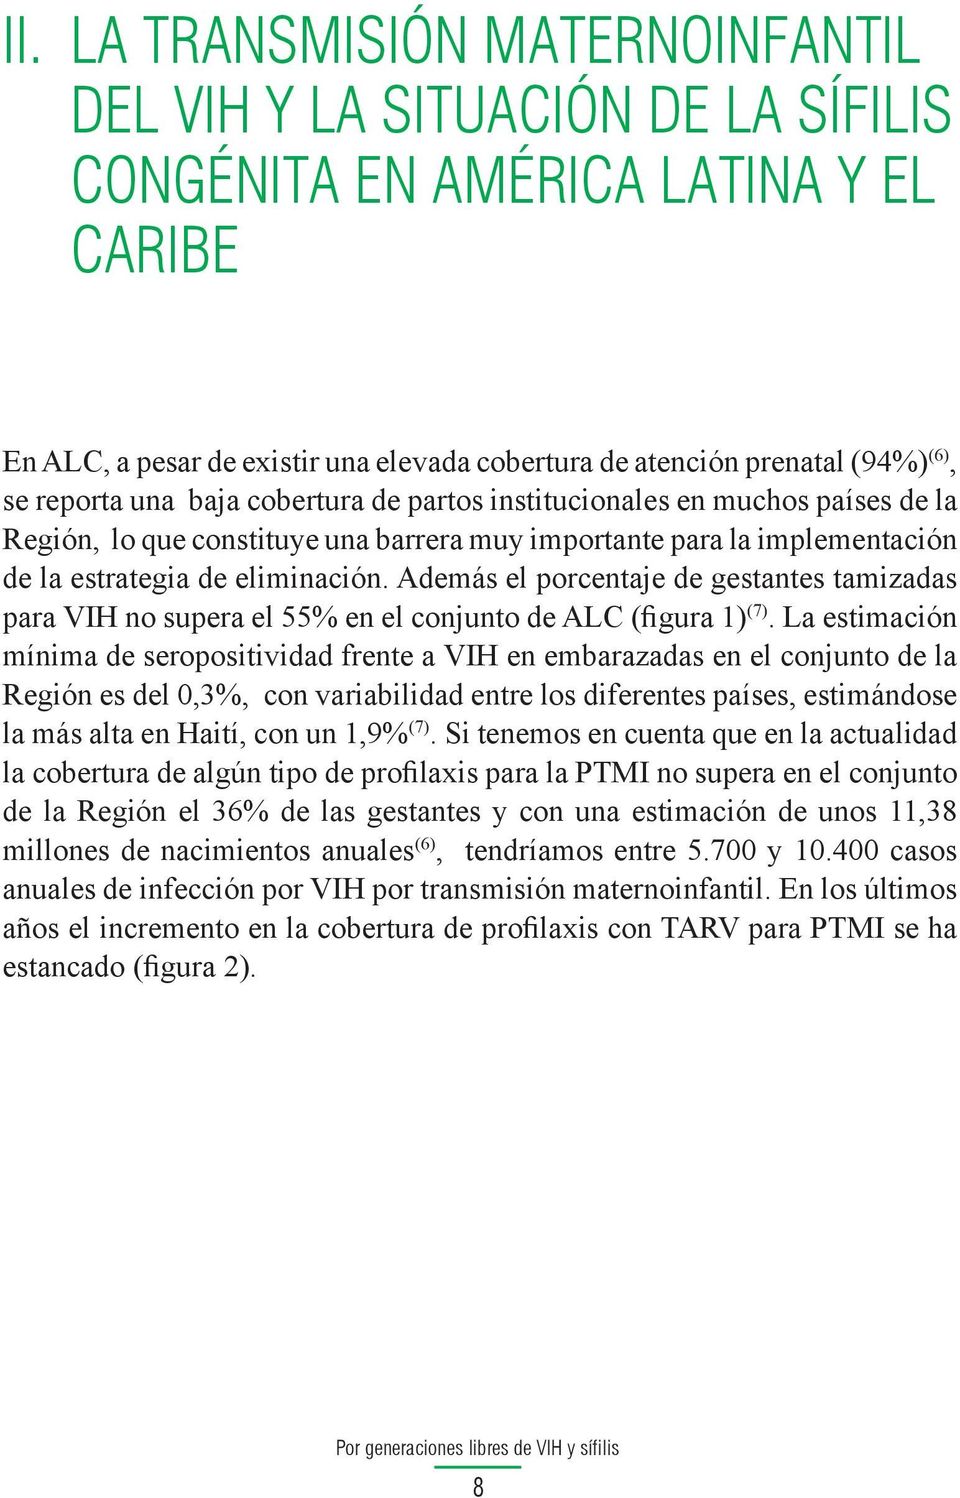 Además el porcentaje de gestantes tamizadas para VIH no supera el 55% en el conjunto de ALC (figura 1) (7).